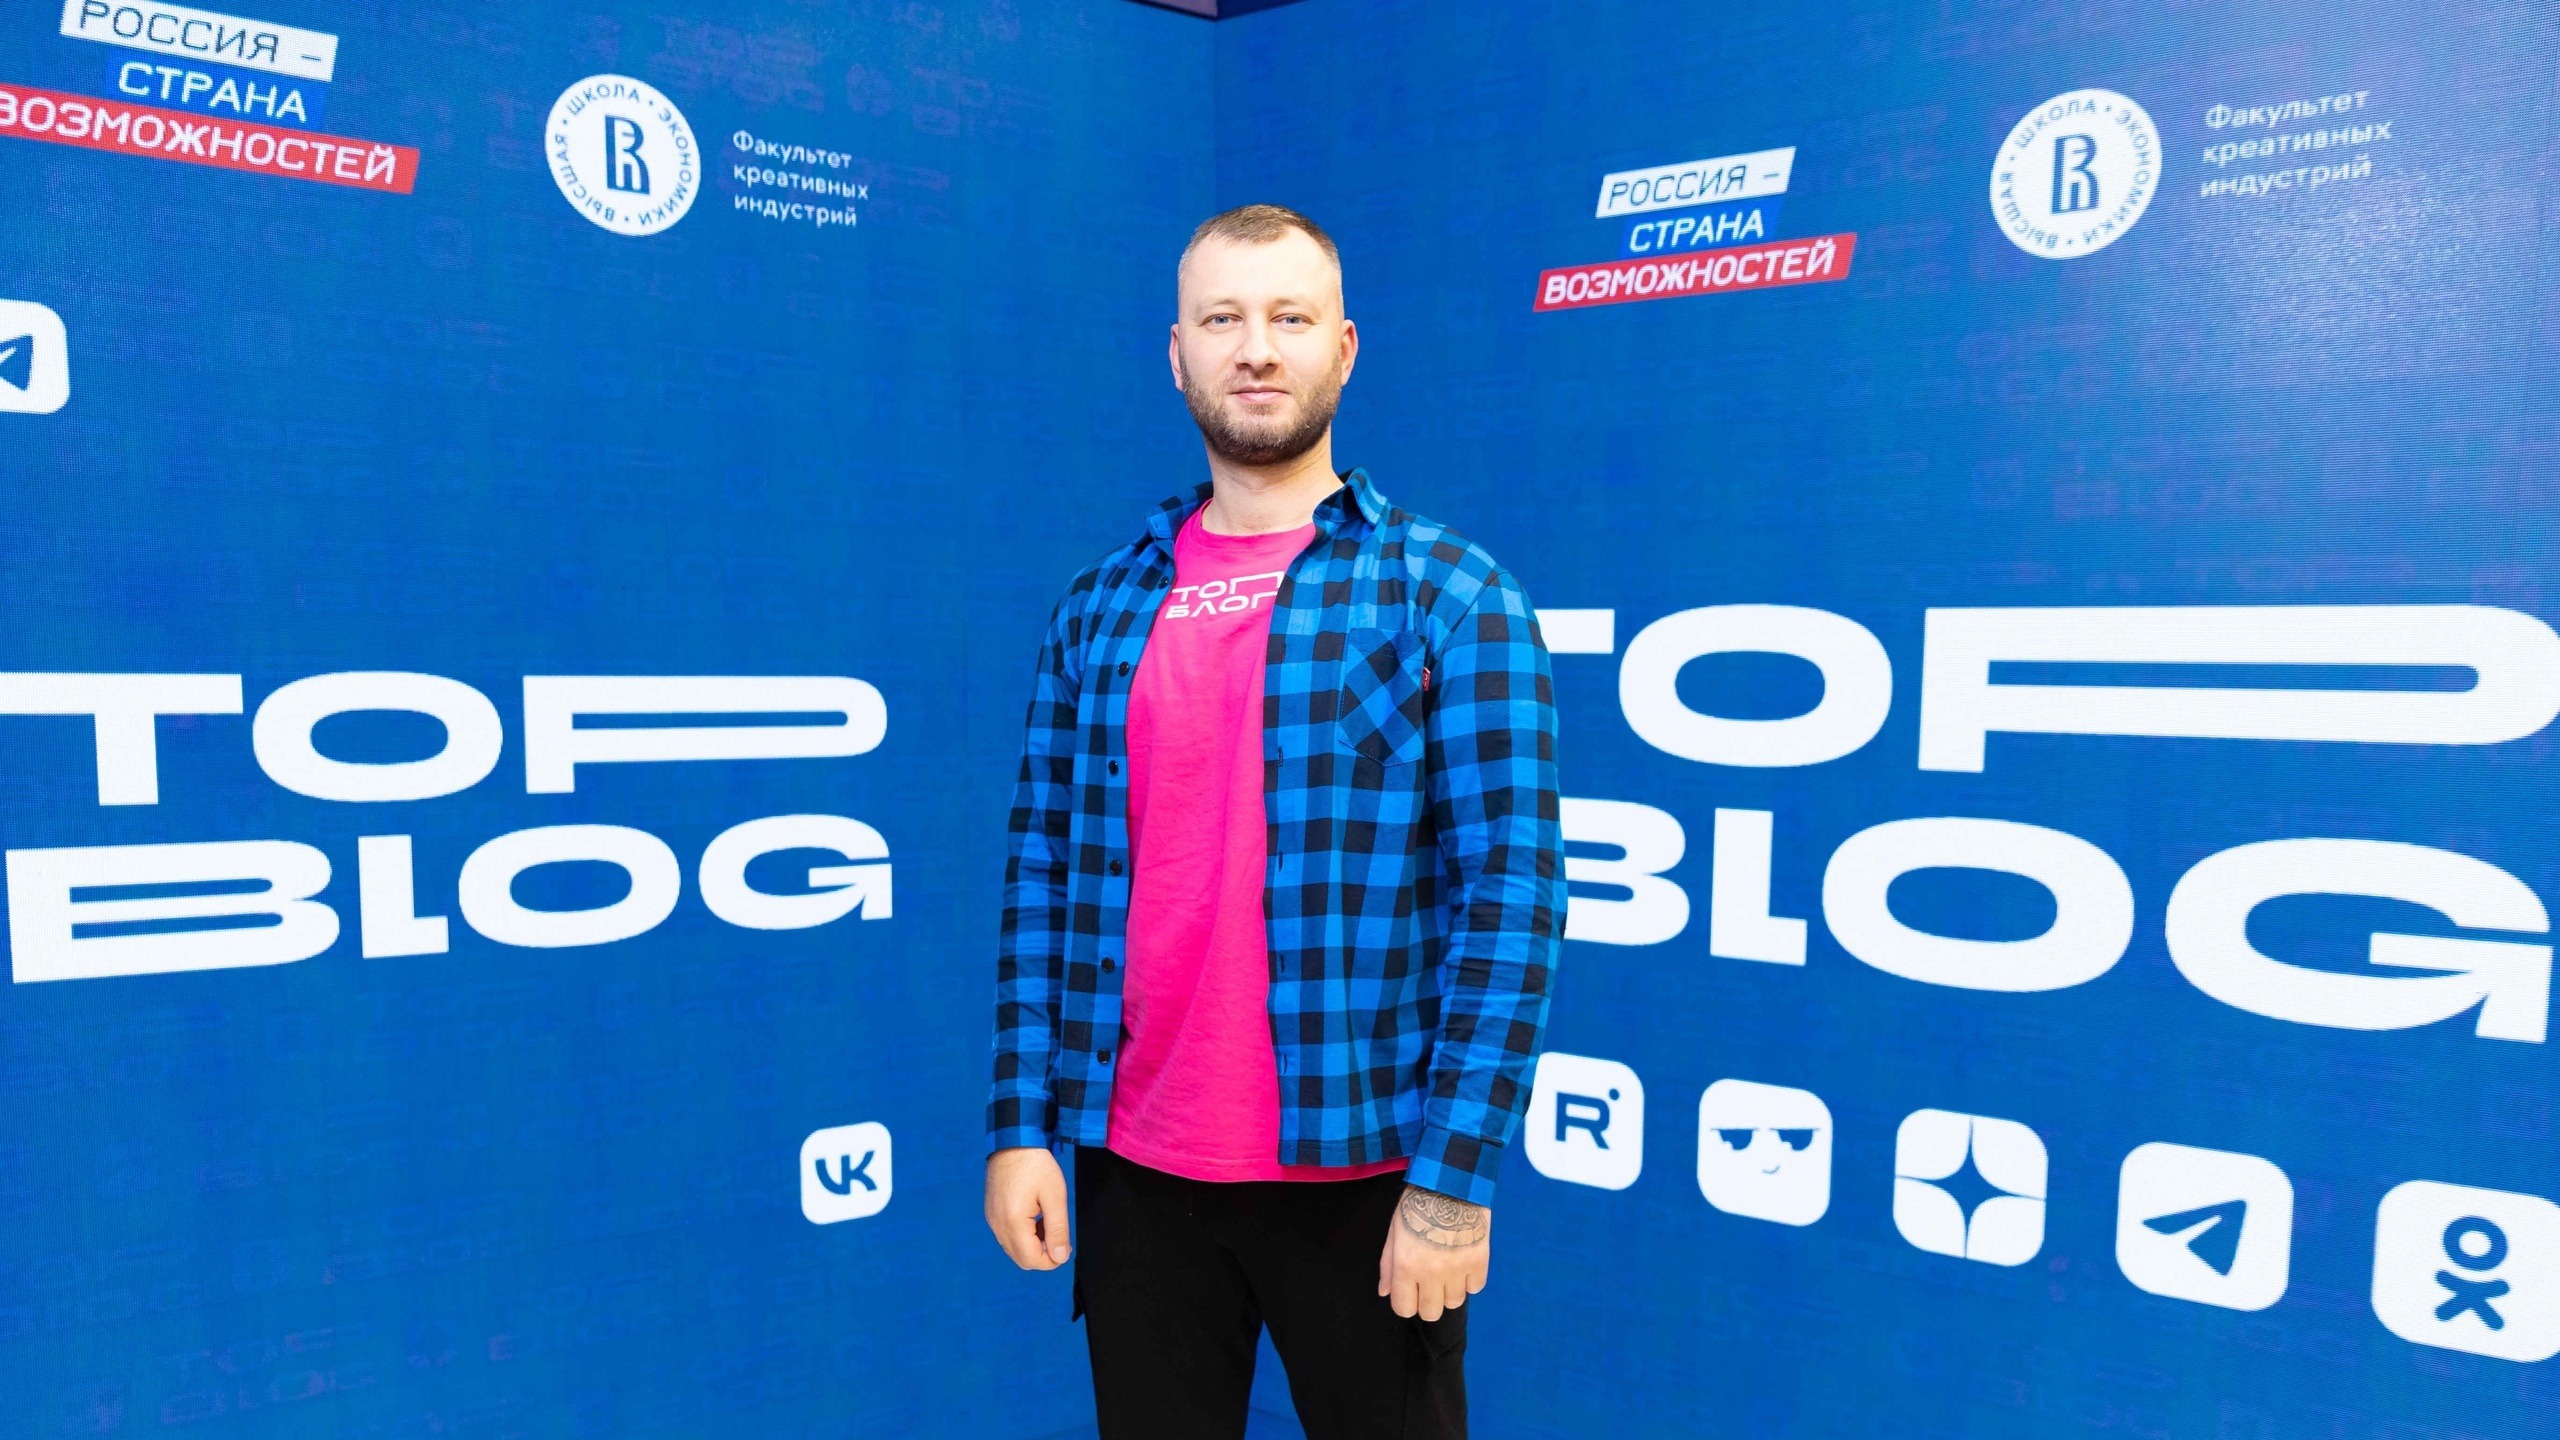 Финалист проекта «ТопБЛОГ» Павел Корпачев помогает вести здоровый образ жизни